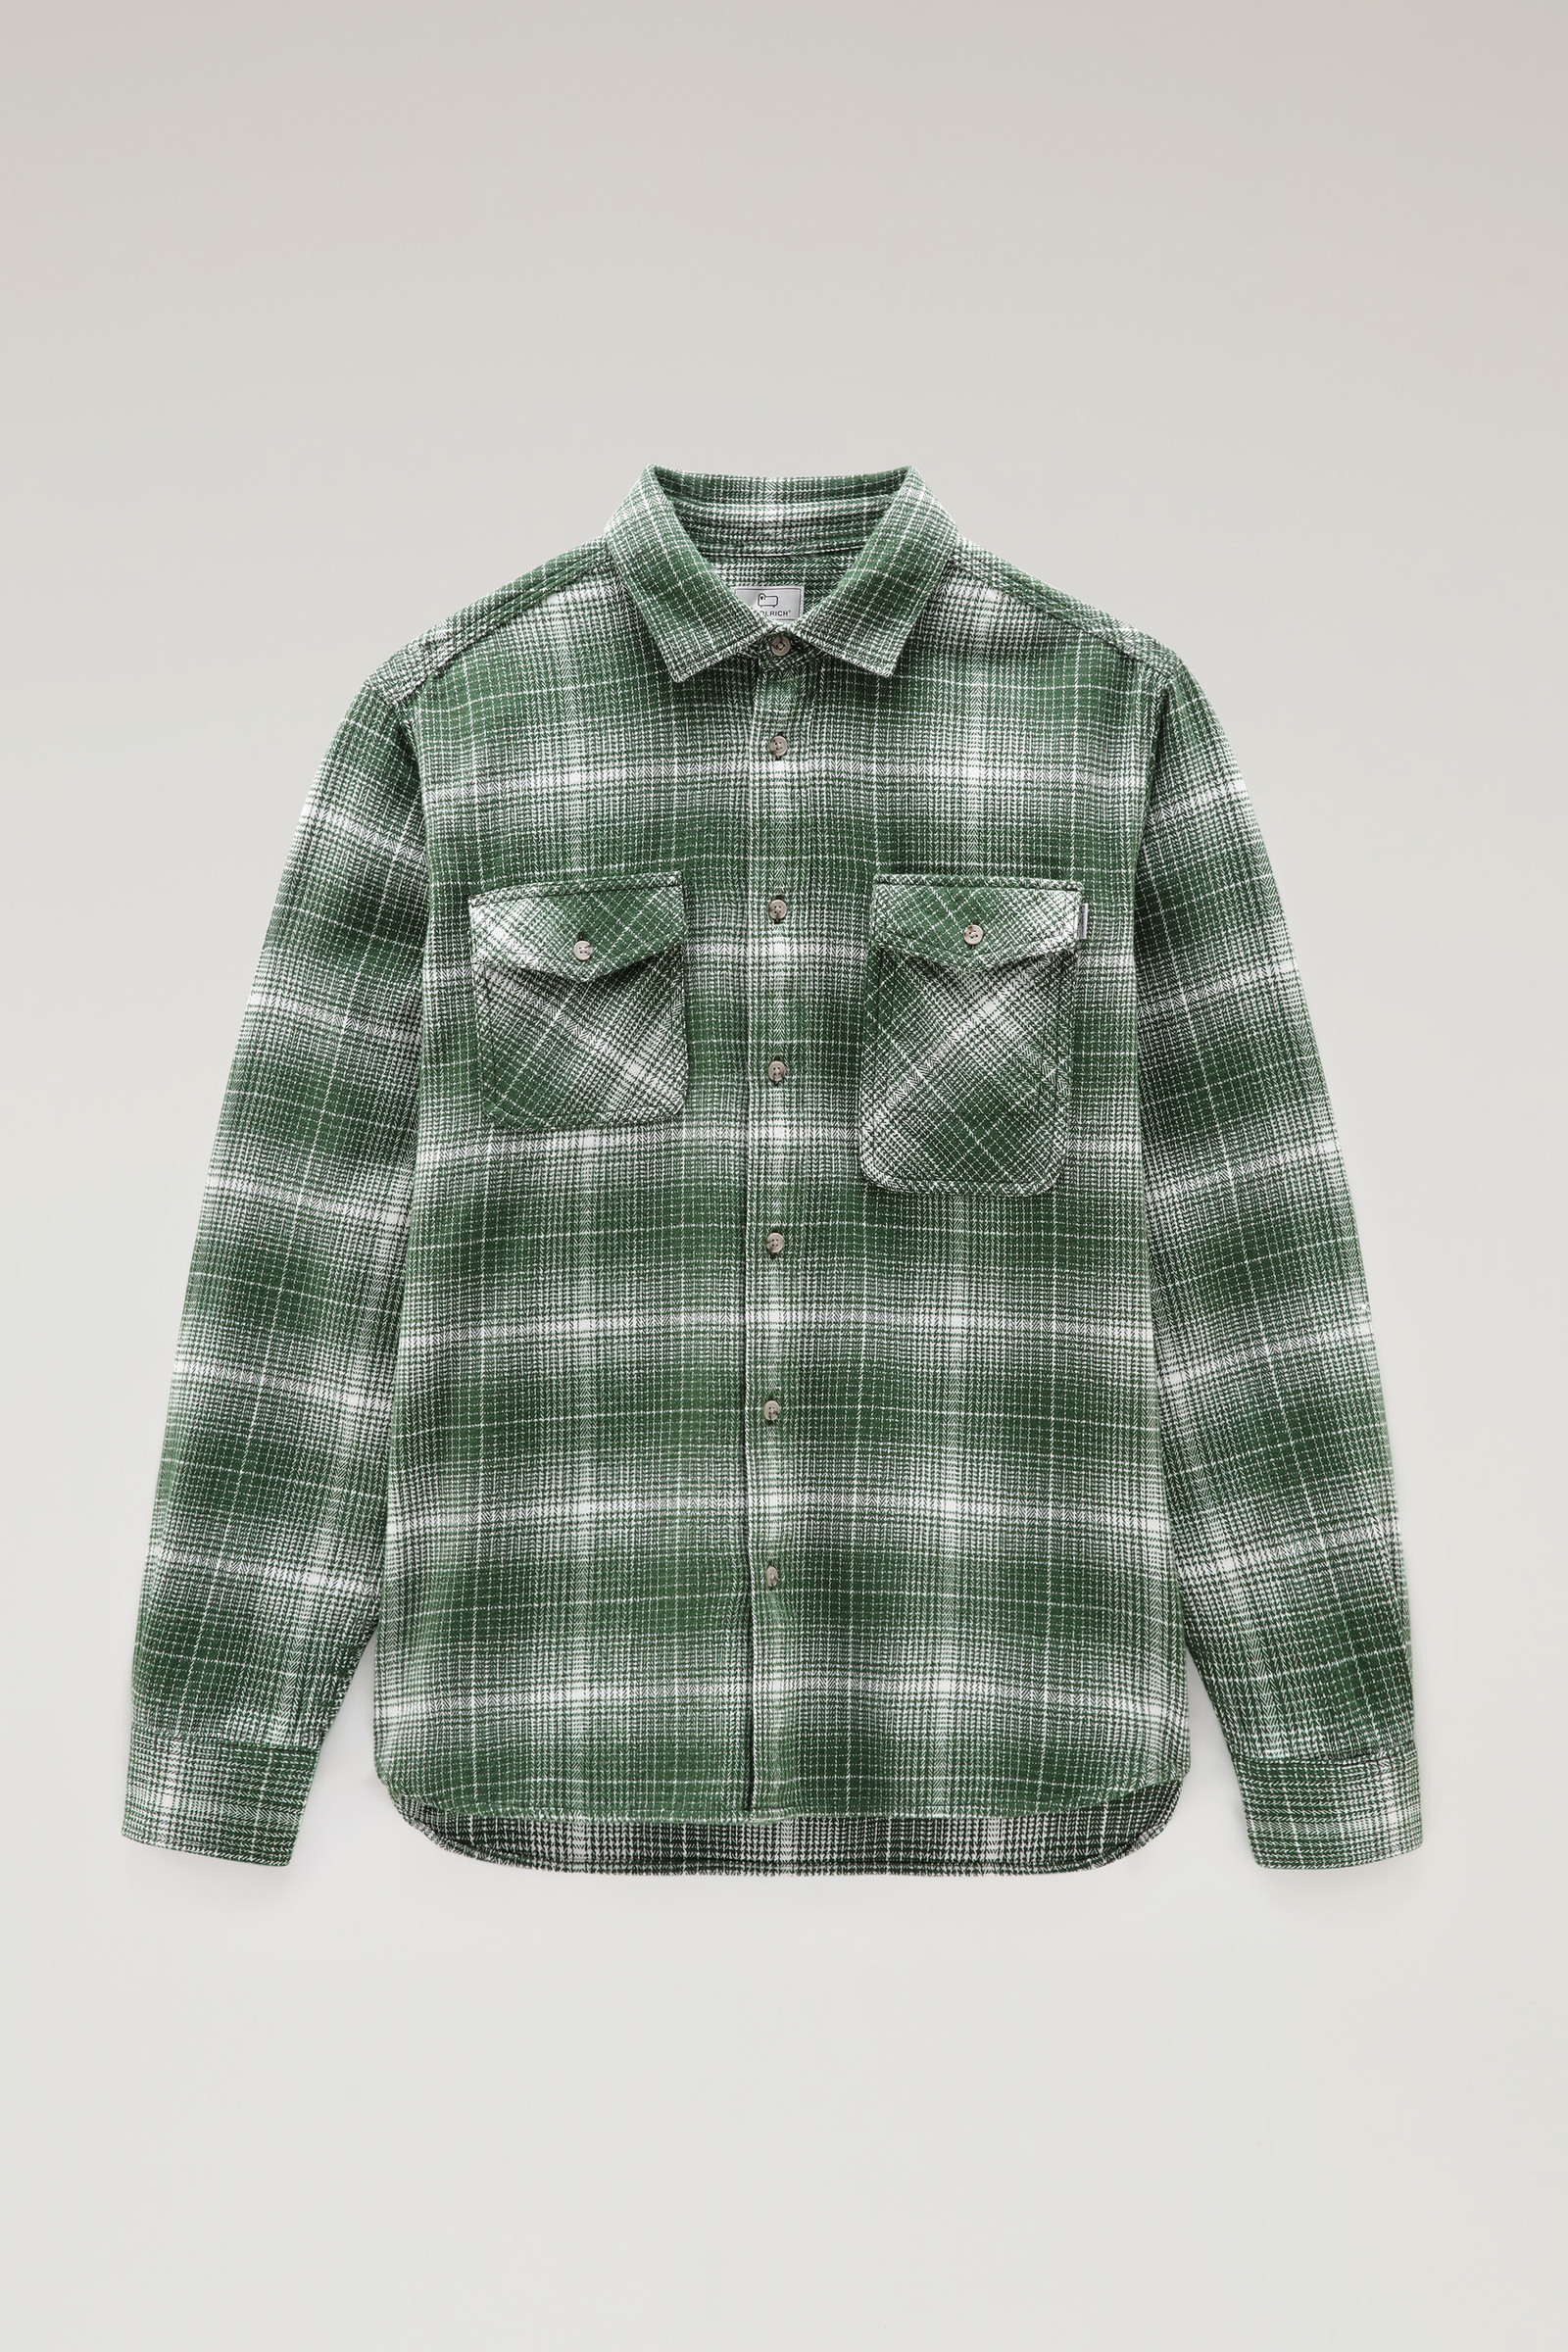 Cruiser Flannel Check Shirt - Men - Green